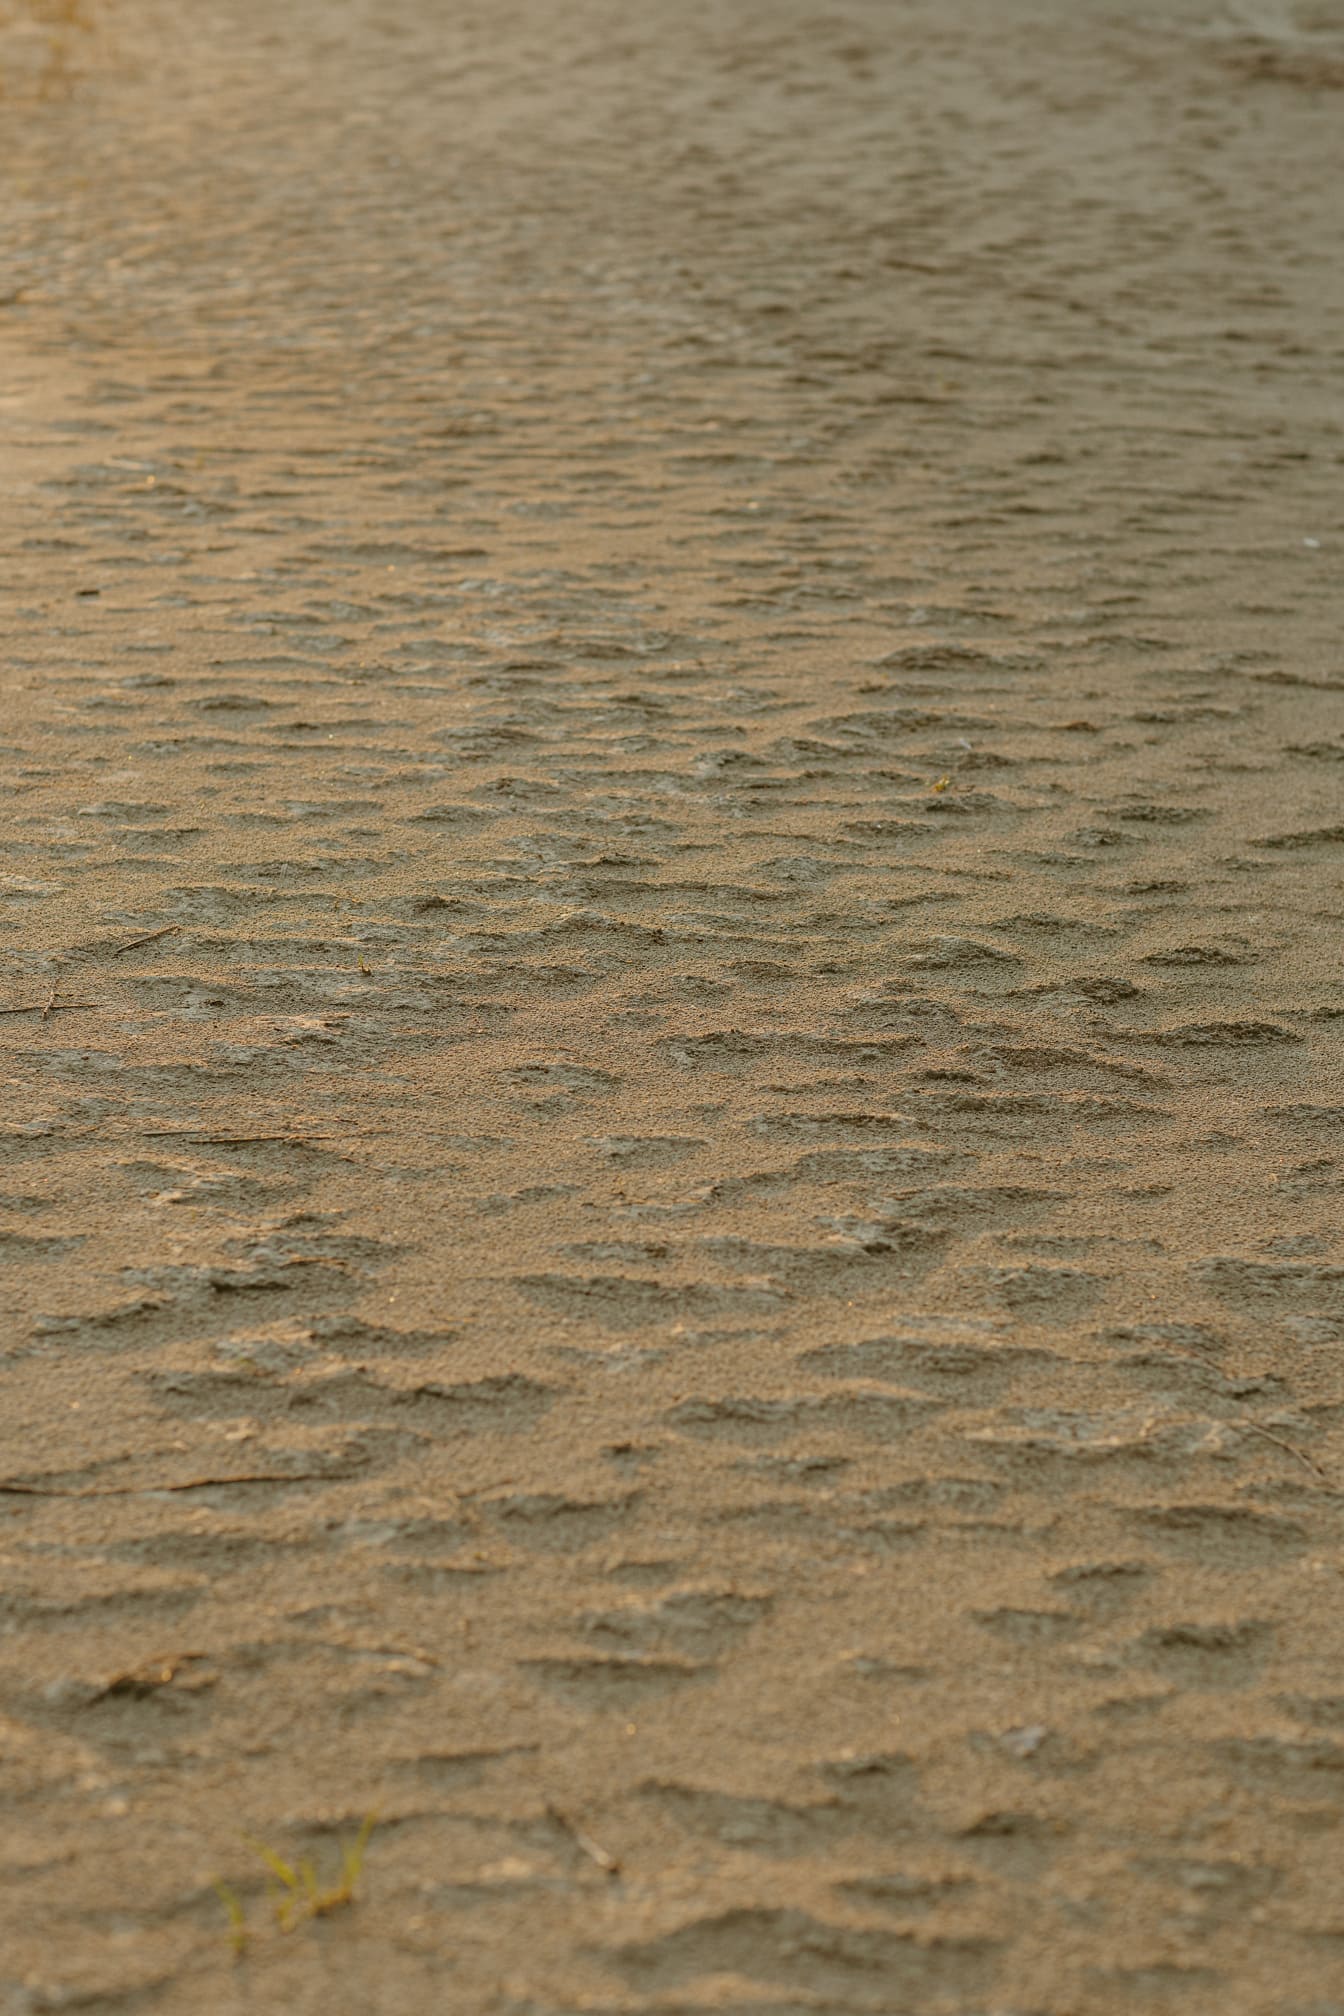 Consistenza di sabbia ruvida marrone chiaro sul terreno